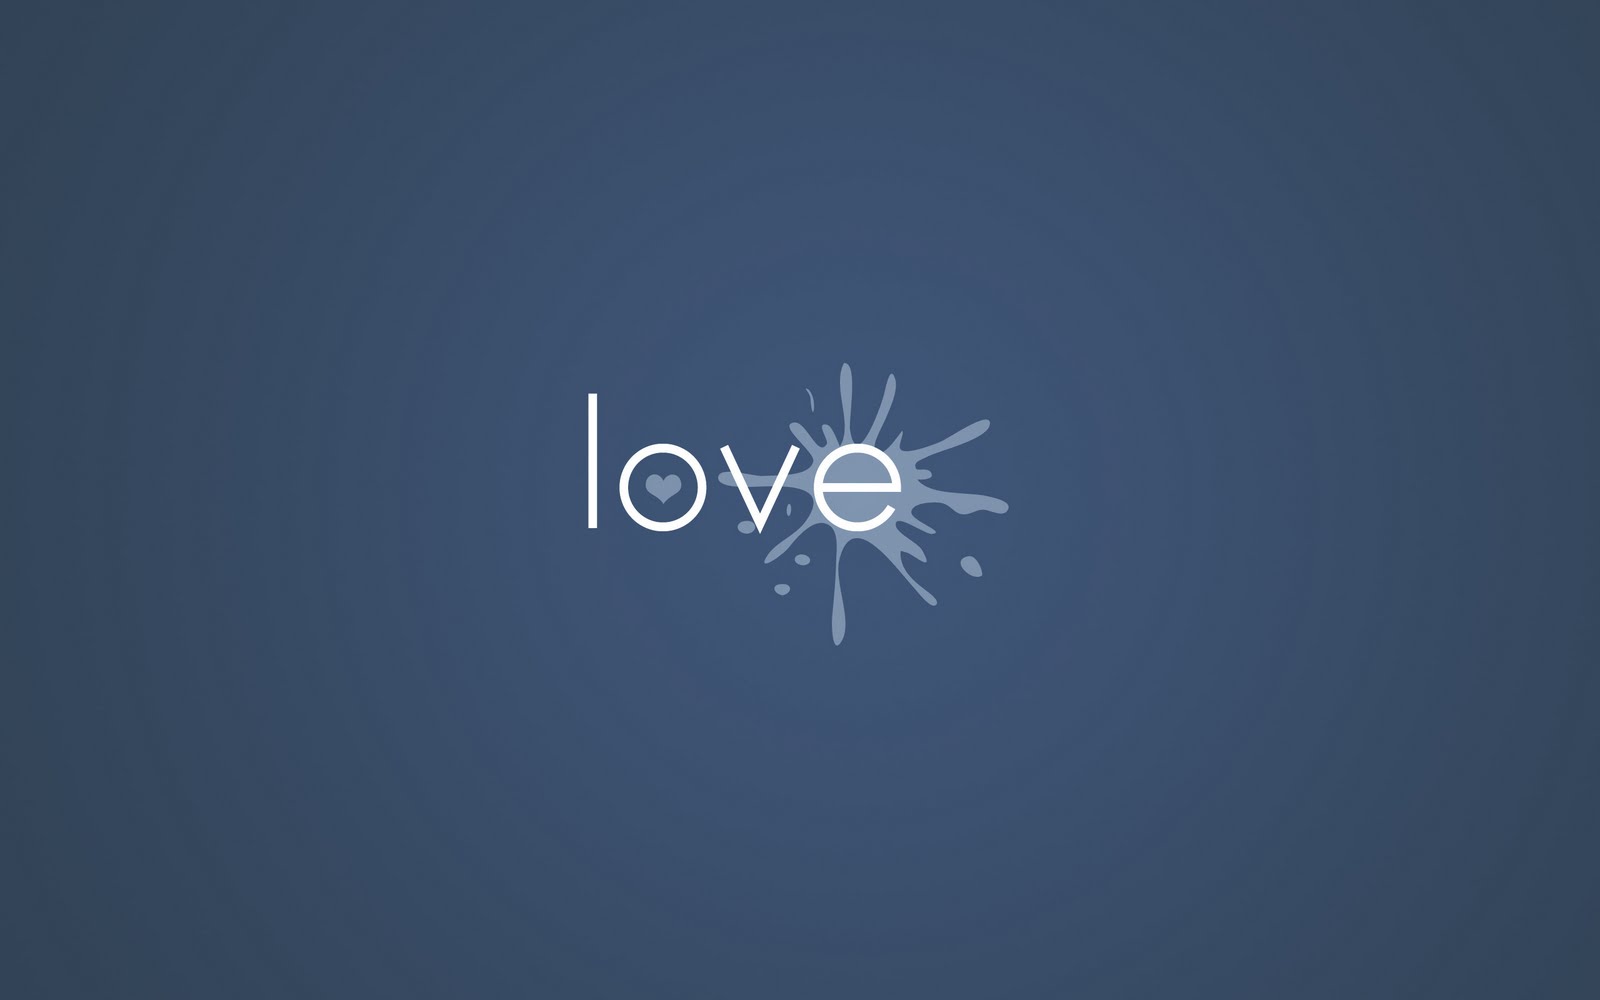 fond d'écran d'amour simple,bleu,police de caractère,texte,ciel,bleu électrique